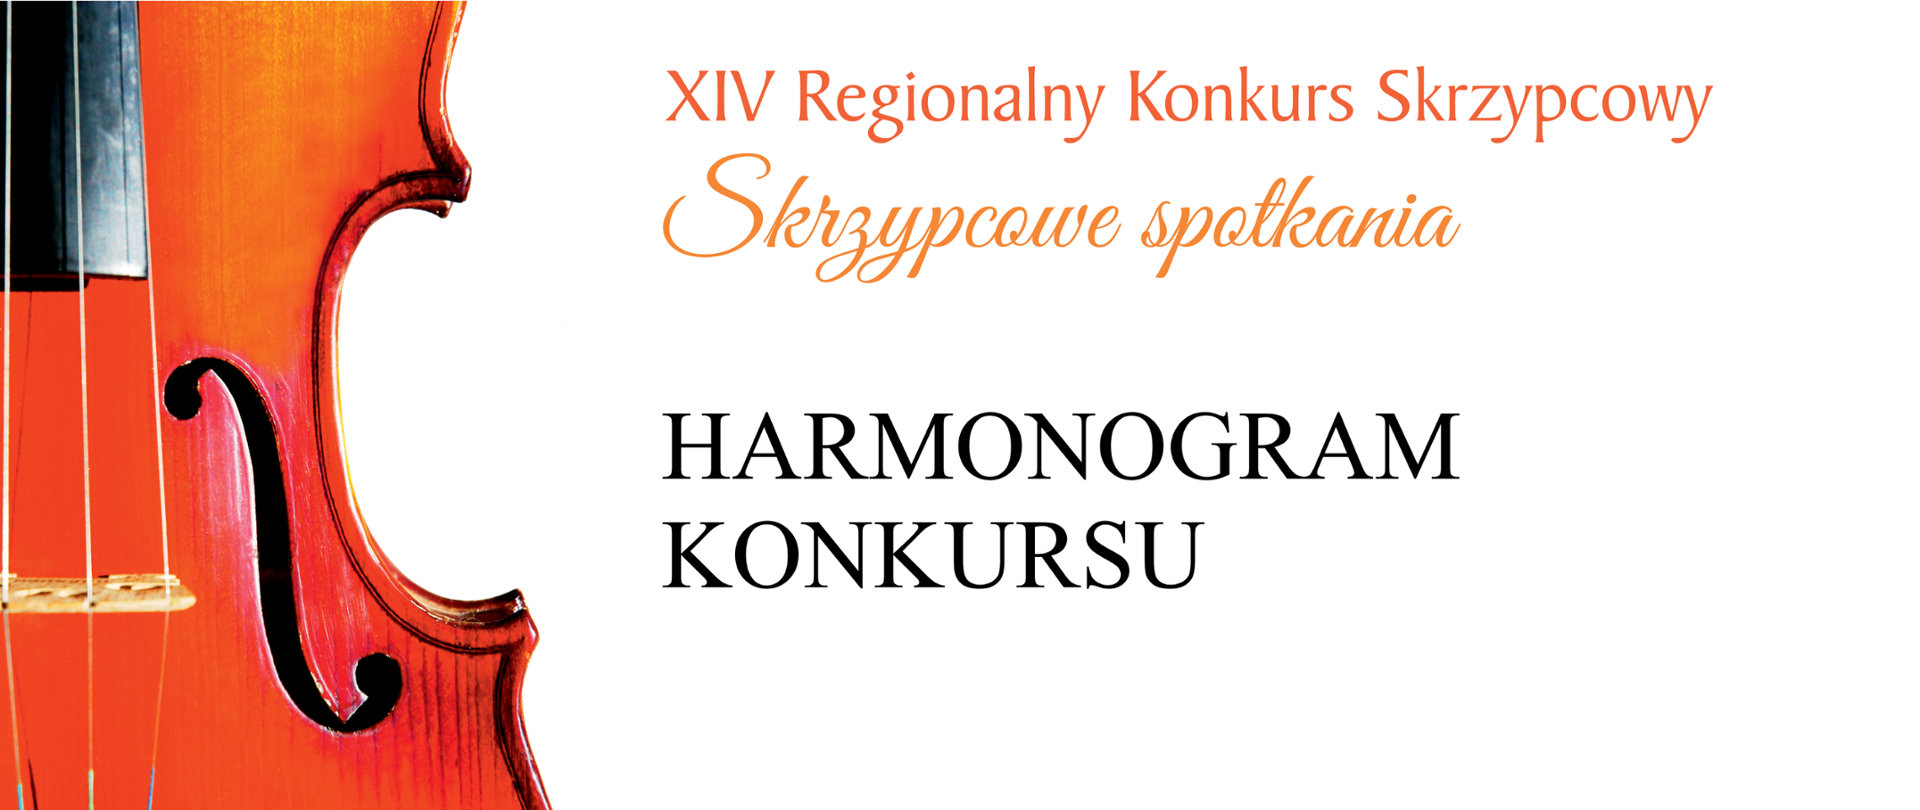 Na zdjęciu po lewej stronie znajduje się wykadrowane zdjęcie połowy skrzypiec, na środku u góry pomarańczowy napis XIV Regionalny Konkurs Skrzypcowy "Skrzypcowe spotkania", poniżej czarny napis HARMONOGRAM KONKURSU